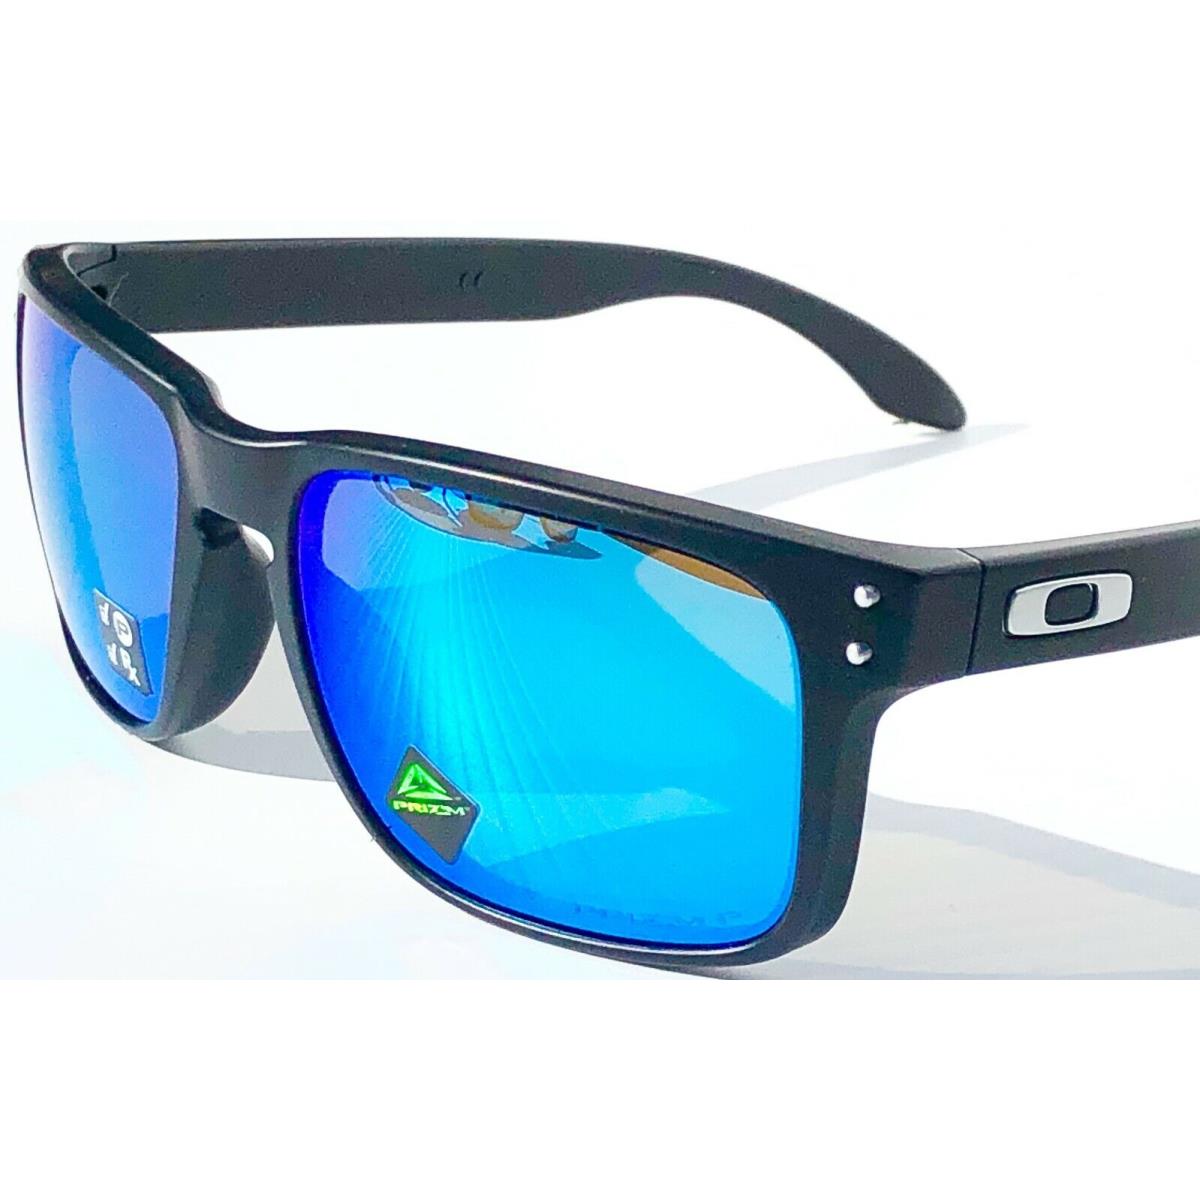 Oakley sunglasses Holbrook - Black Frame, Blue Lens 7